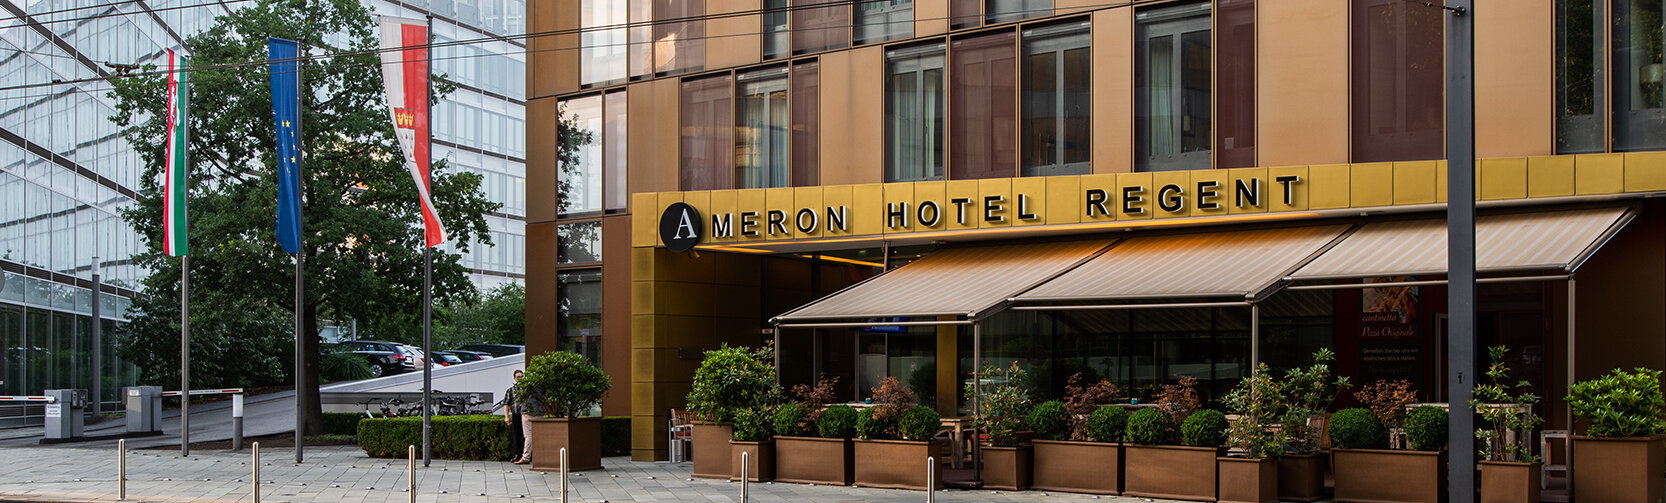 AMERON Köln Hotel Regent Aussenansicht Front Baum mit Logo